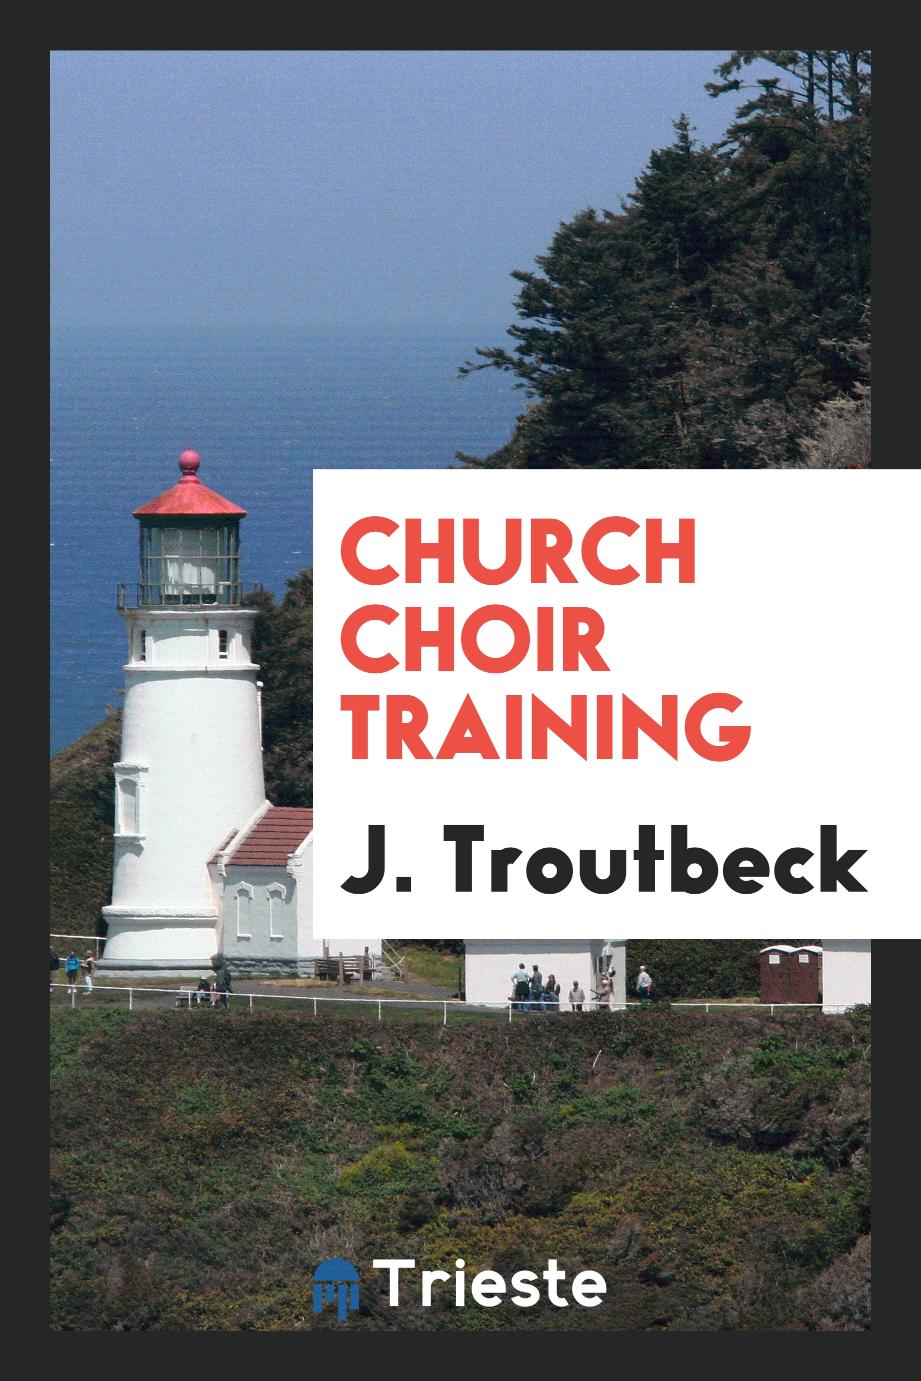 Church choir training